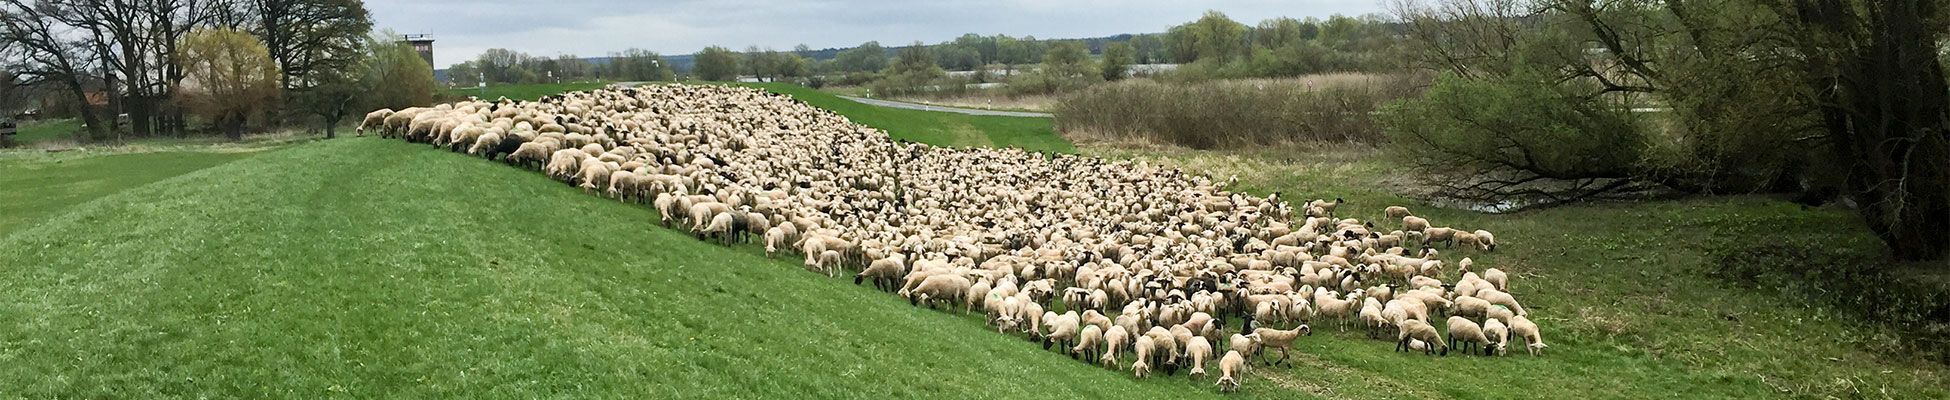 Foto: Deichplege - Schafe fressend auf einem Rasendeich